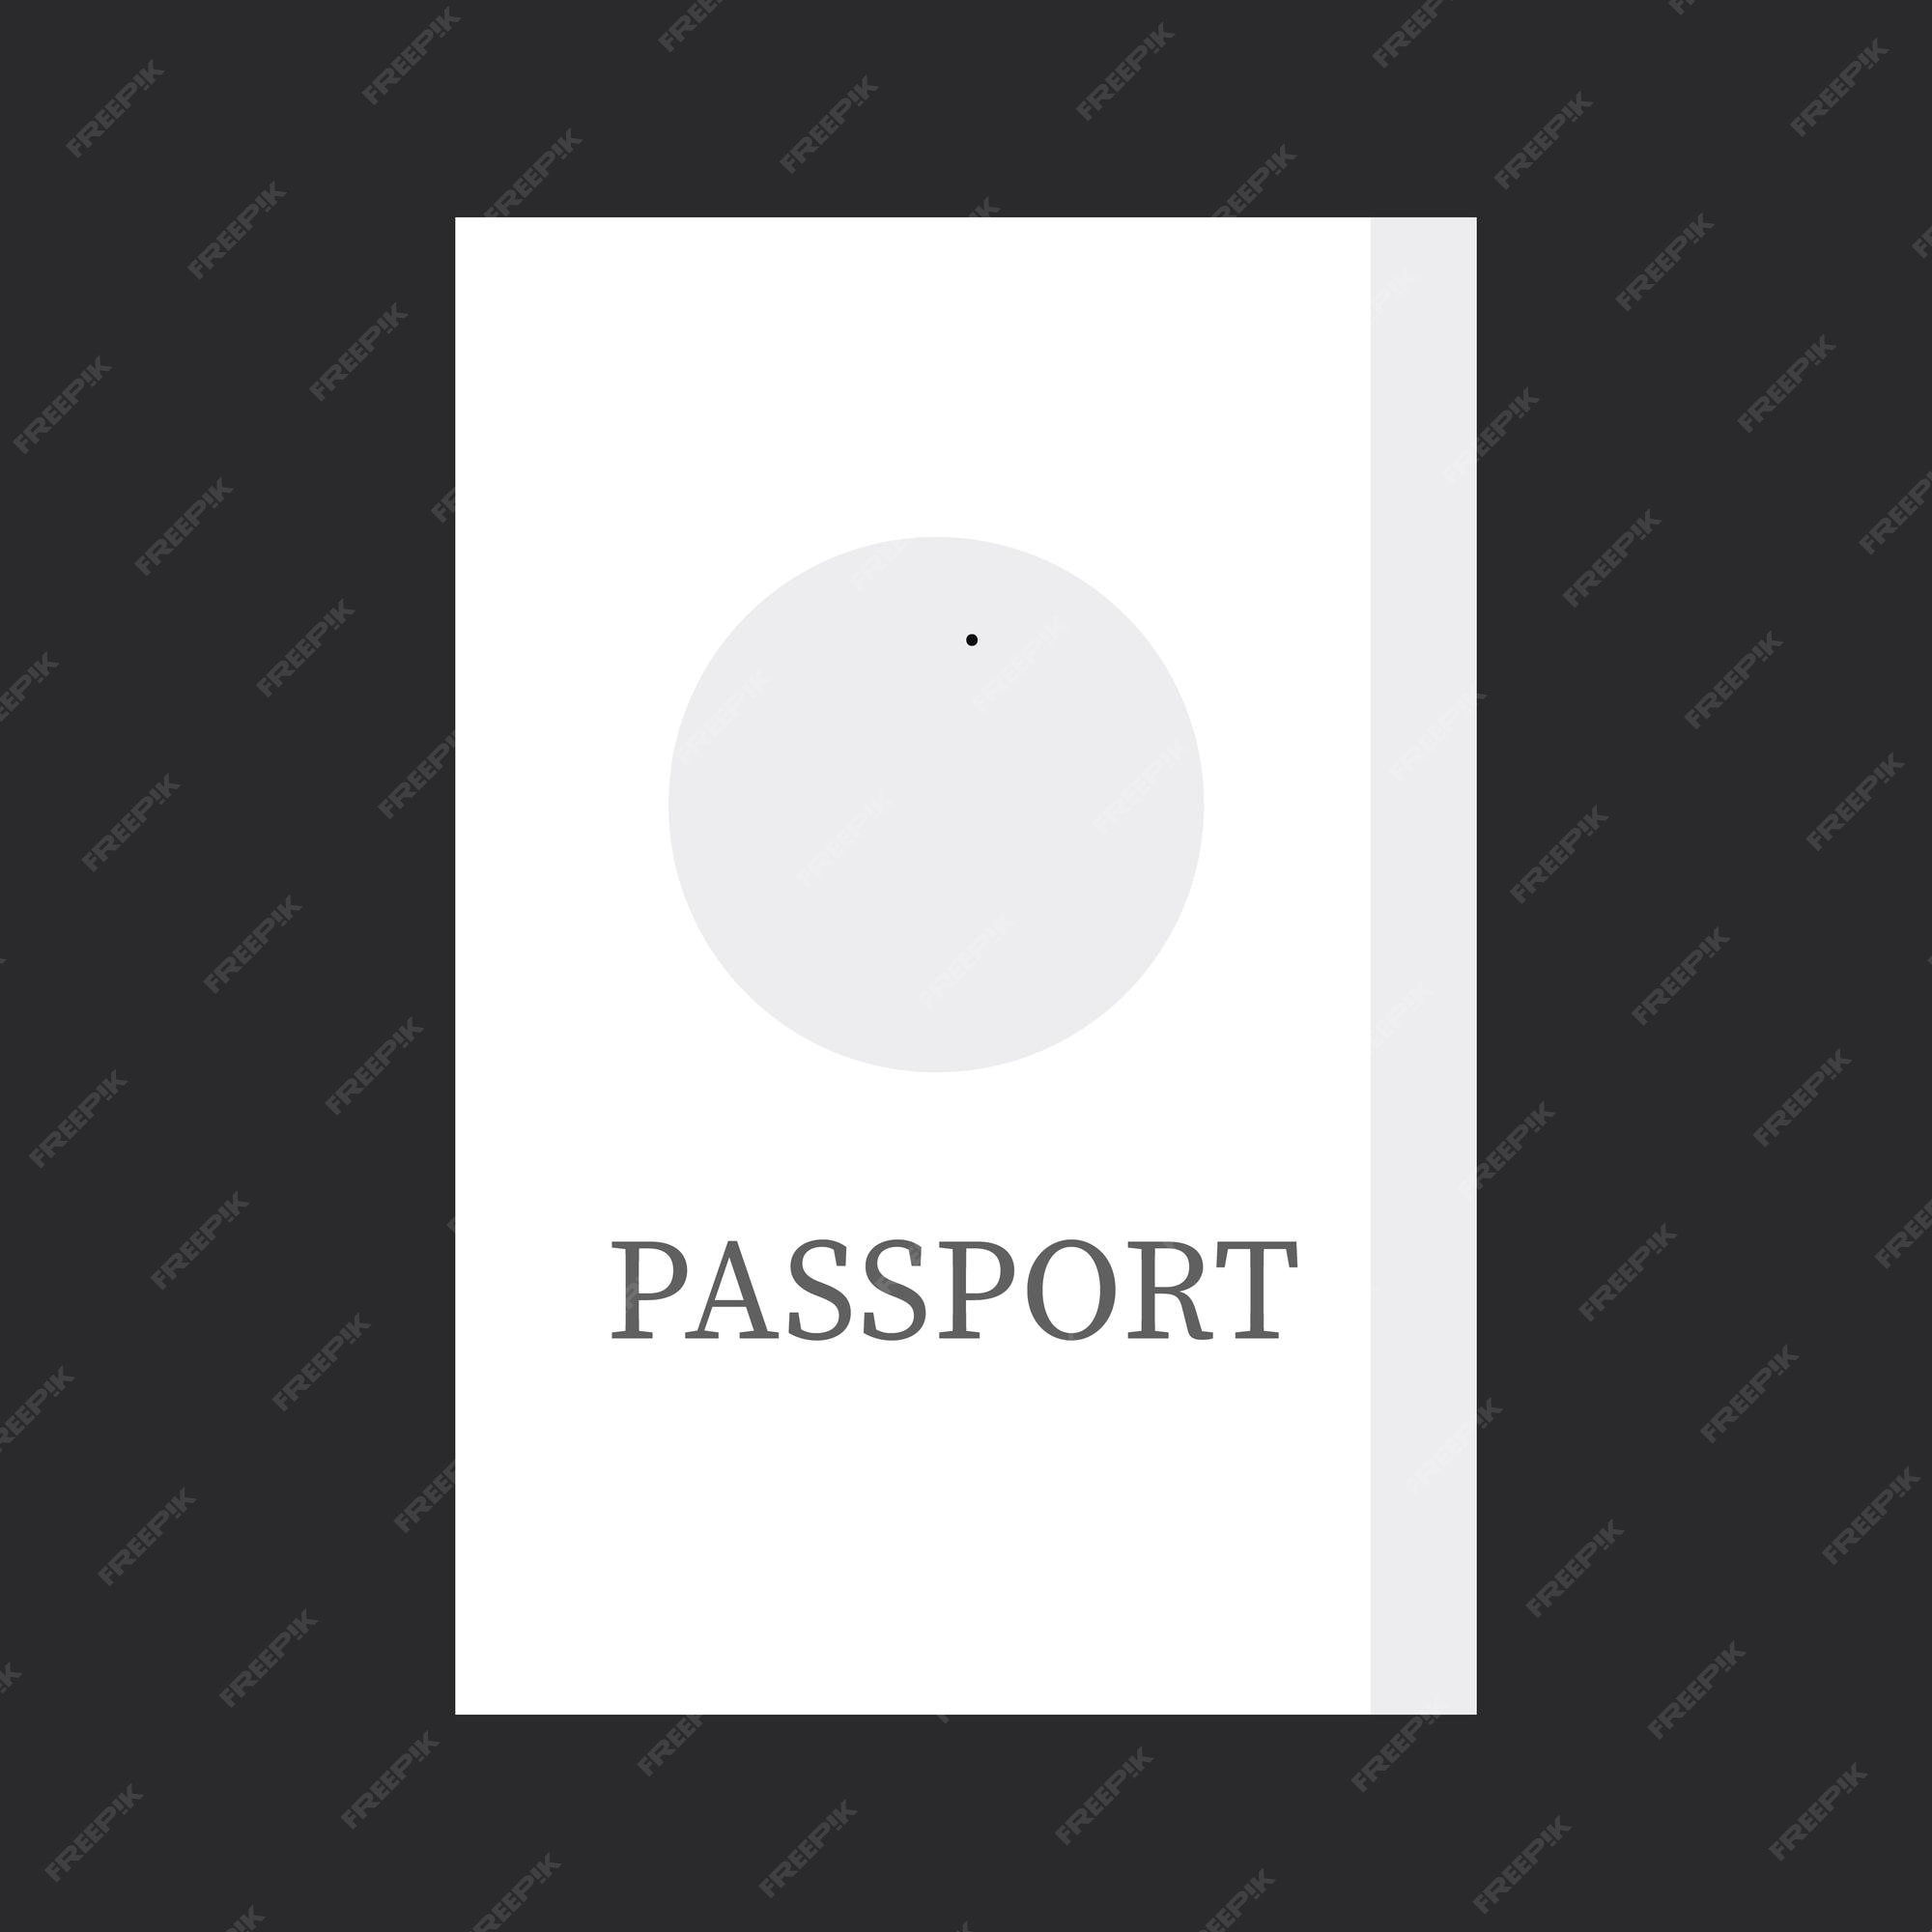 Bạn đang tìm kiếm hình ảnh về passport trắng đẹp? Đừng khó chịu nữa, hãy xem bức ảnh để tìm thấy hình ảnh đẹp mắt cho chiếc passport của bạn.